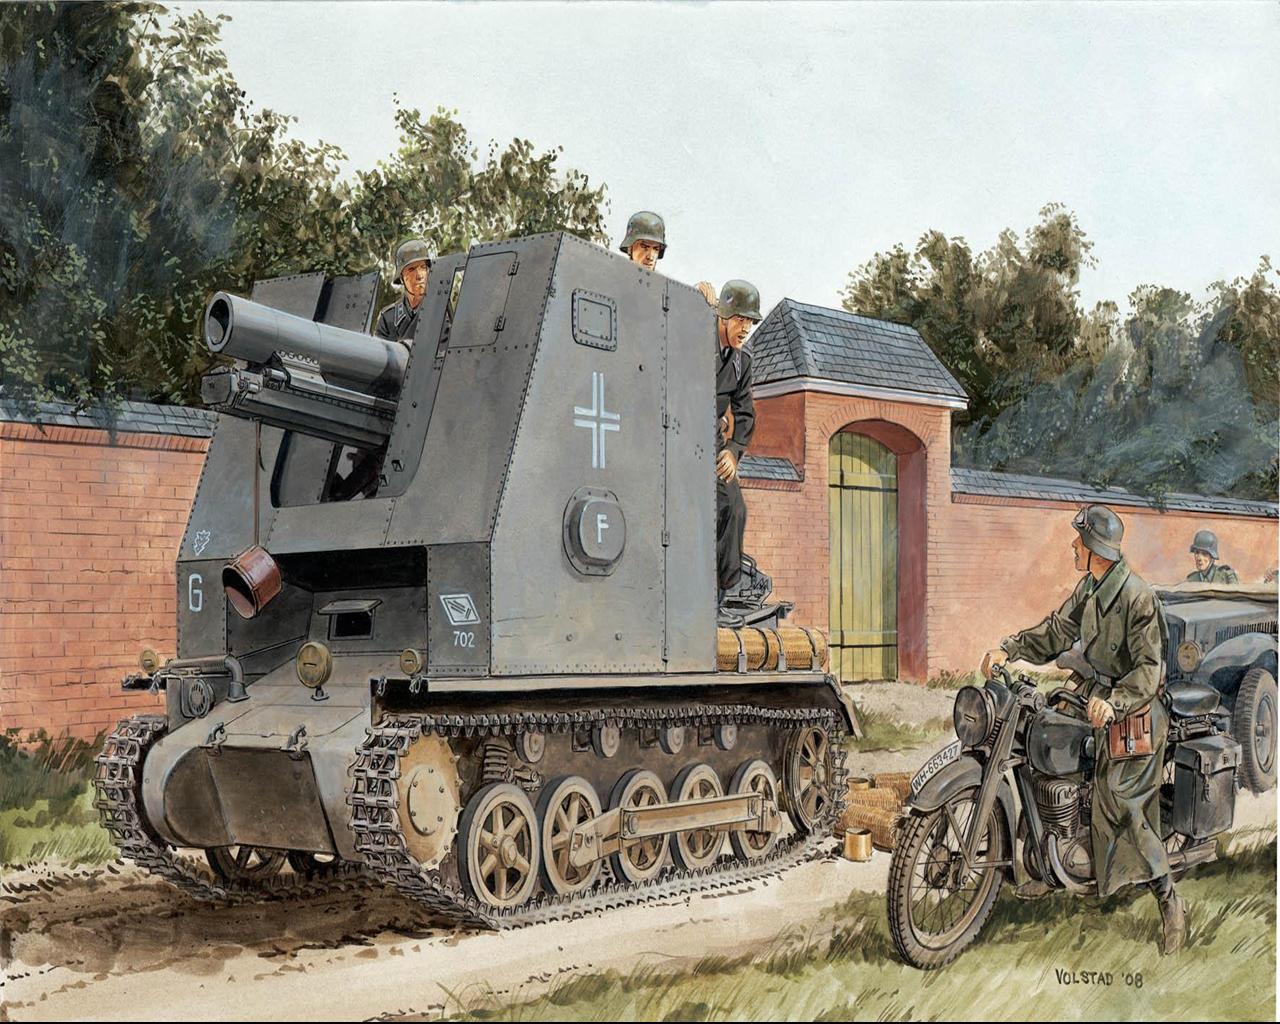 壁紙 戦闘車両 描かれた壁紙 15cm S Ig 33 Sf Pz Kpfw I Aus B 陸軍 ダウンロード 写真